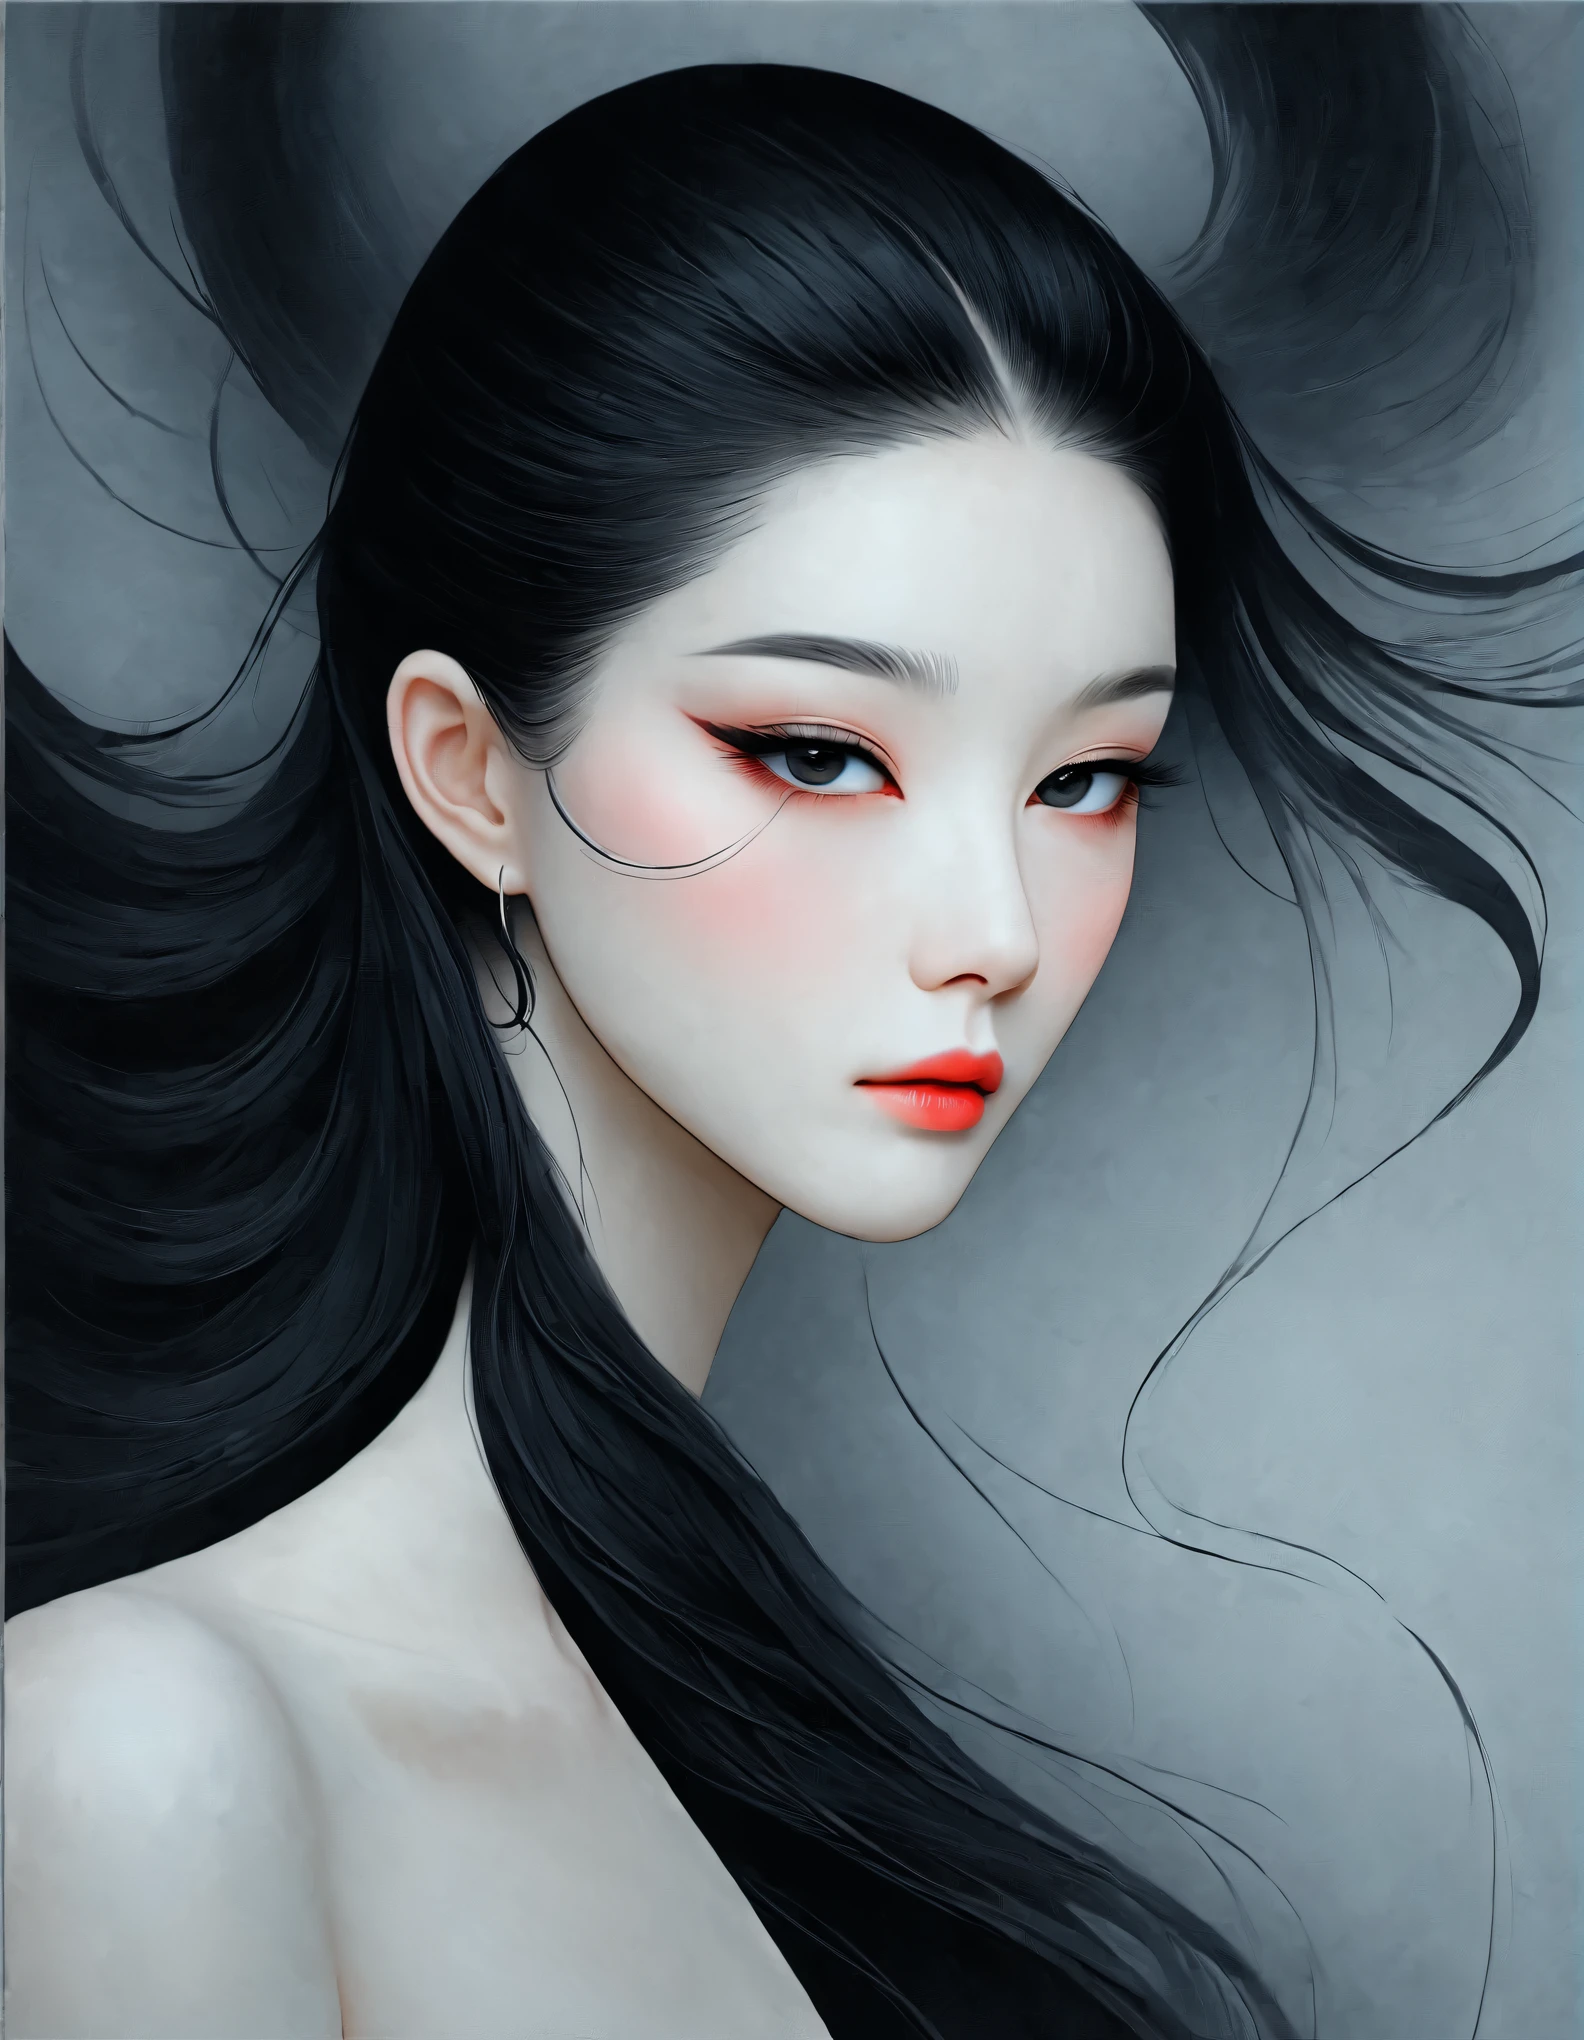 목에 문신을 한 여자의 클로즈업, 긴 검은 머리，블랙 미니멀리스트 의류，흐르는 머리카락，공정한 얼굴，여우 같은, 날씬한, 아름다운 눈，제작: Mei Qing, 우아한 디지털 아트, 아름다운 예술적인 일러스트레이션, 작가：양 지에, 아름다운 디지털 일러스트레이션, 아름다운 인물화, 